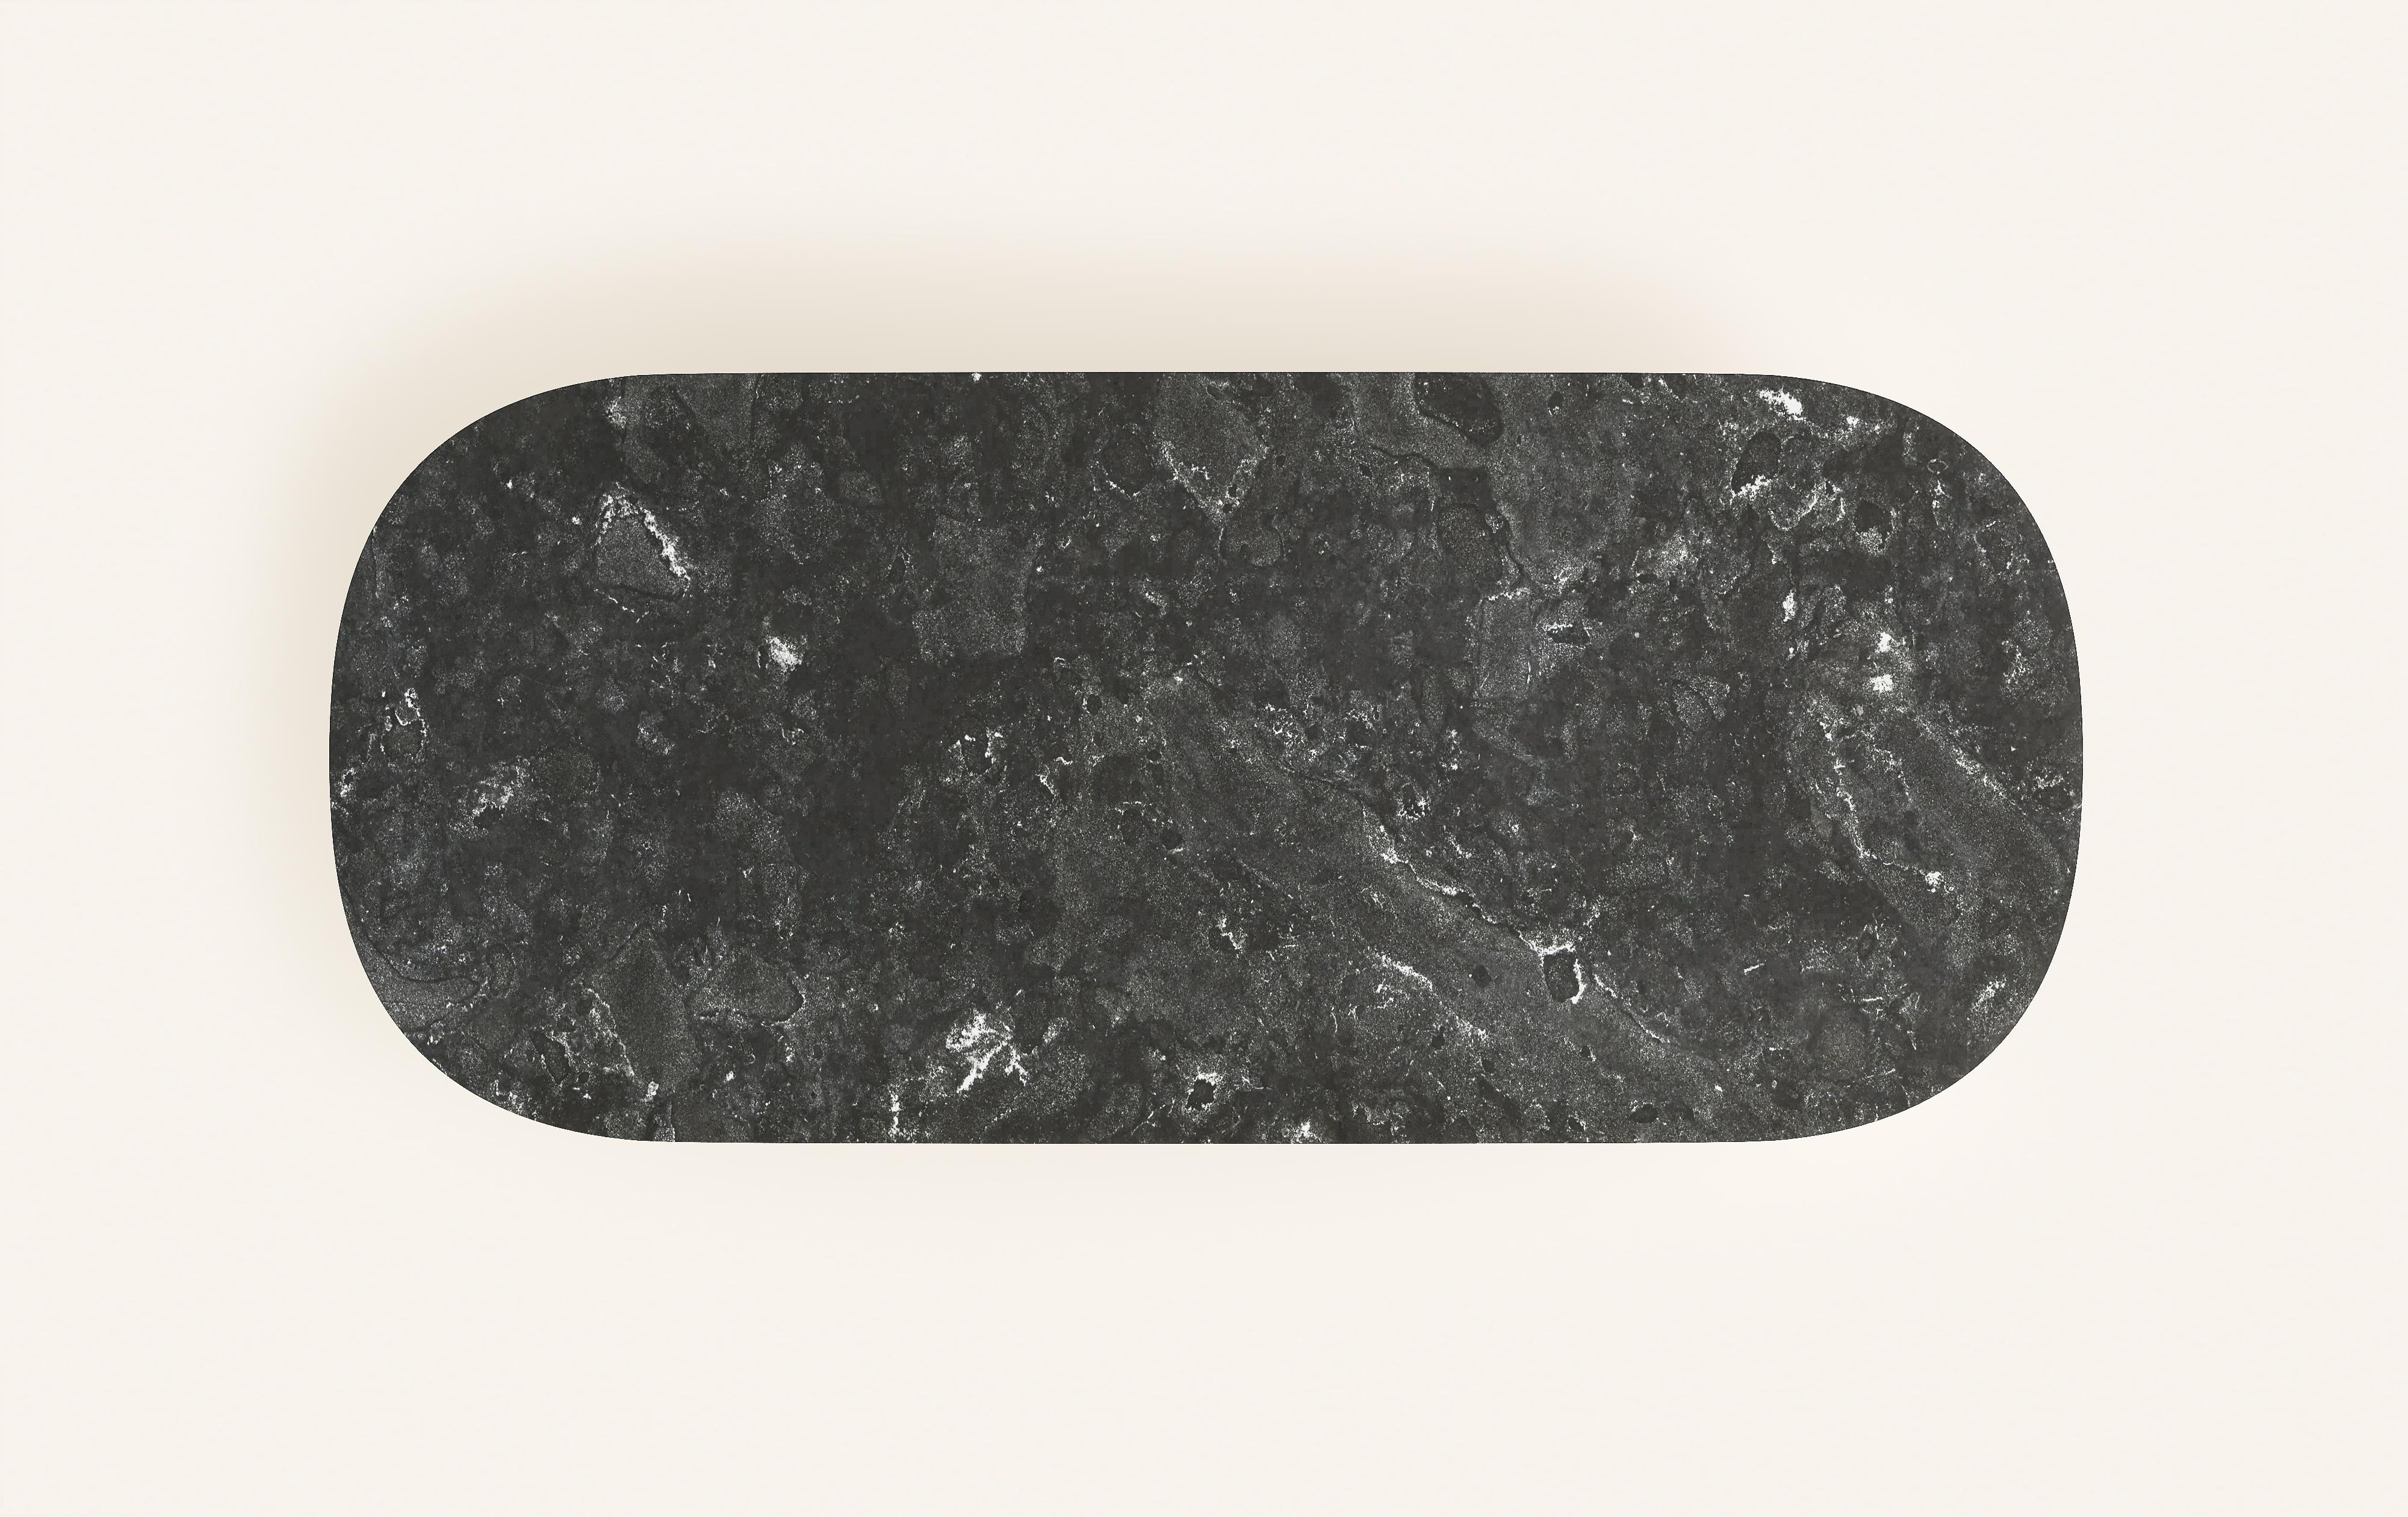 FORM(LA) Cono Oval Dining Table 96”L x 42”W x 30”H Nero Petite Granite In New Condition For Sale In Los Angeles, CA